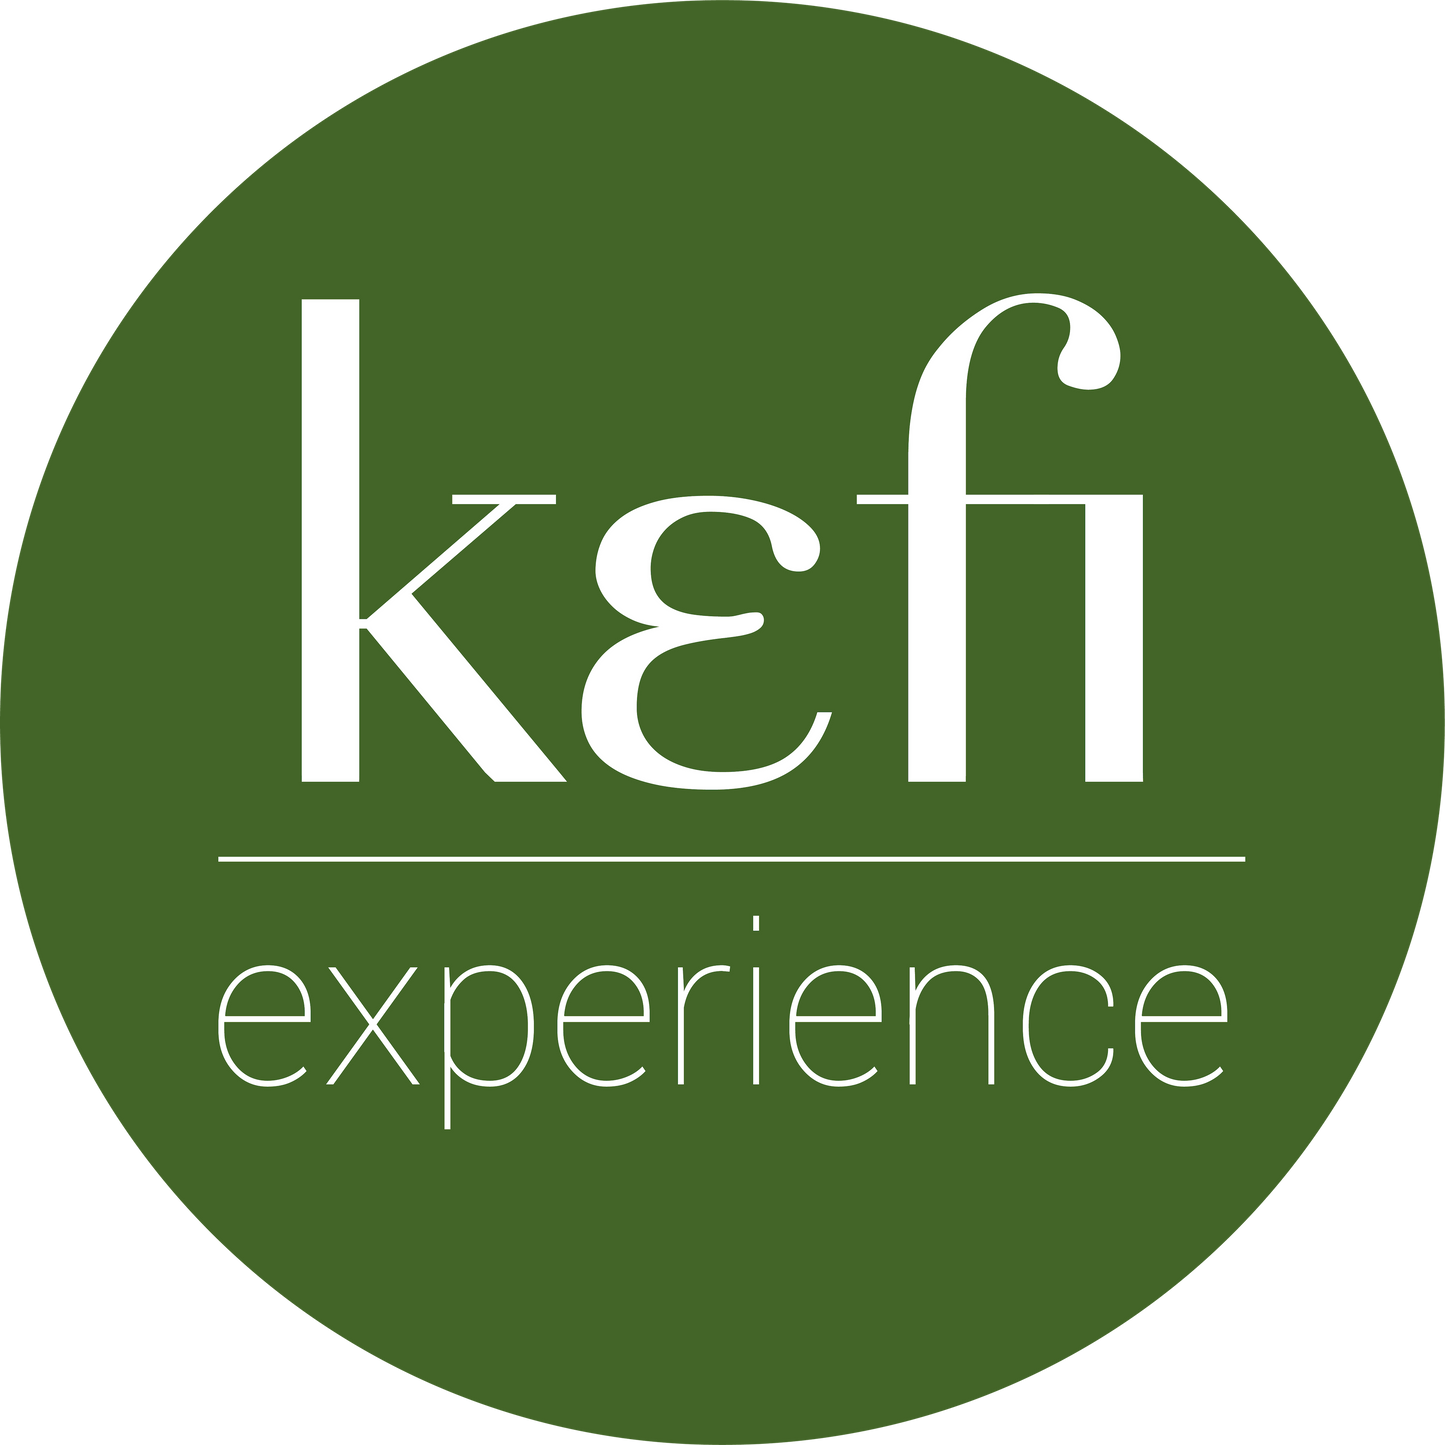 Kefi Experience